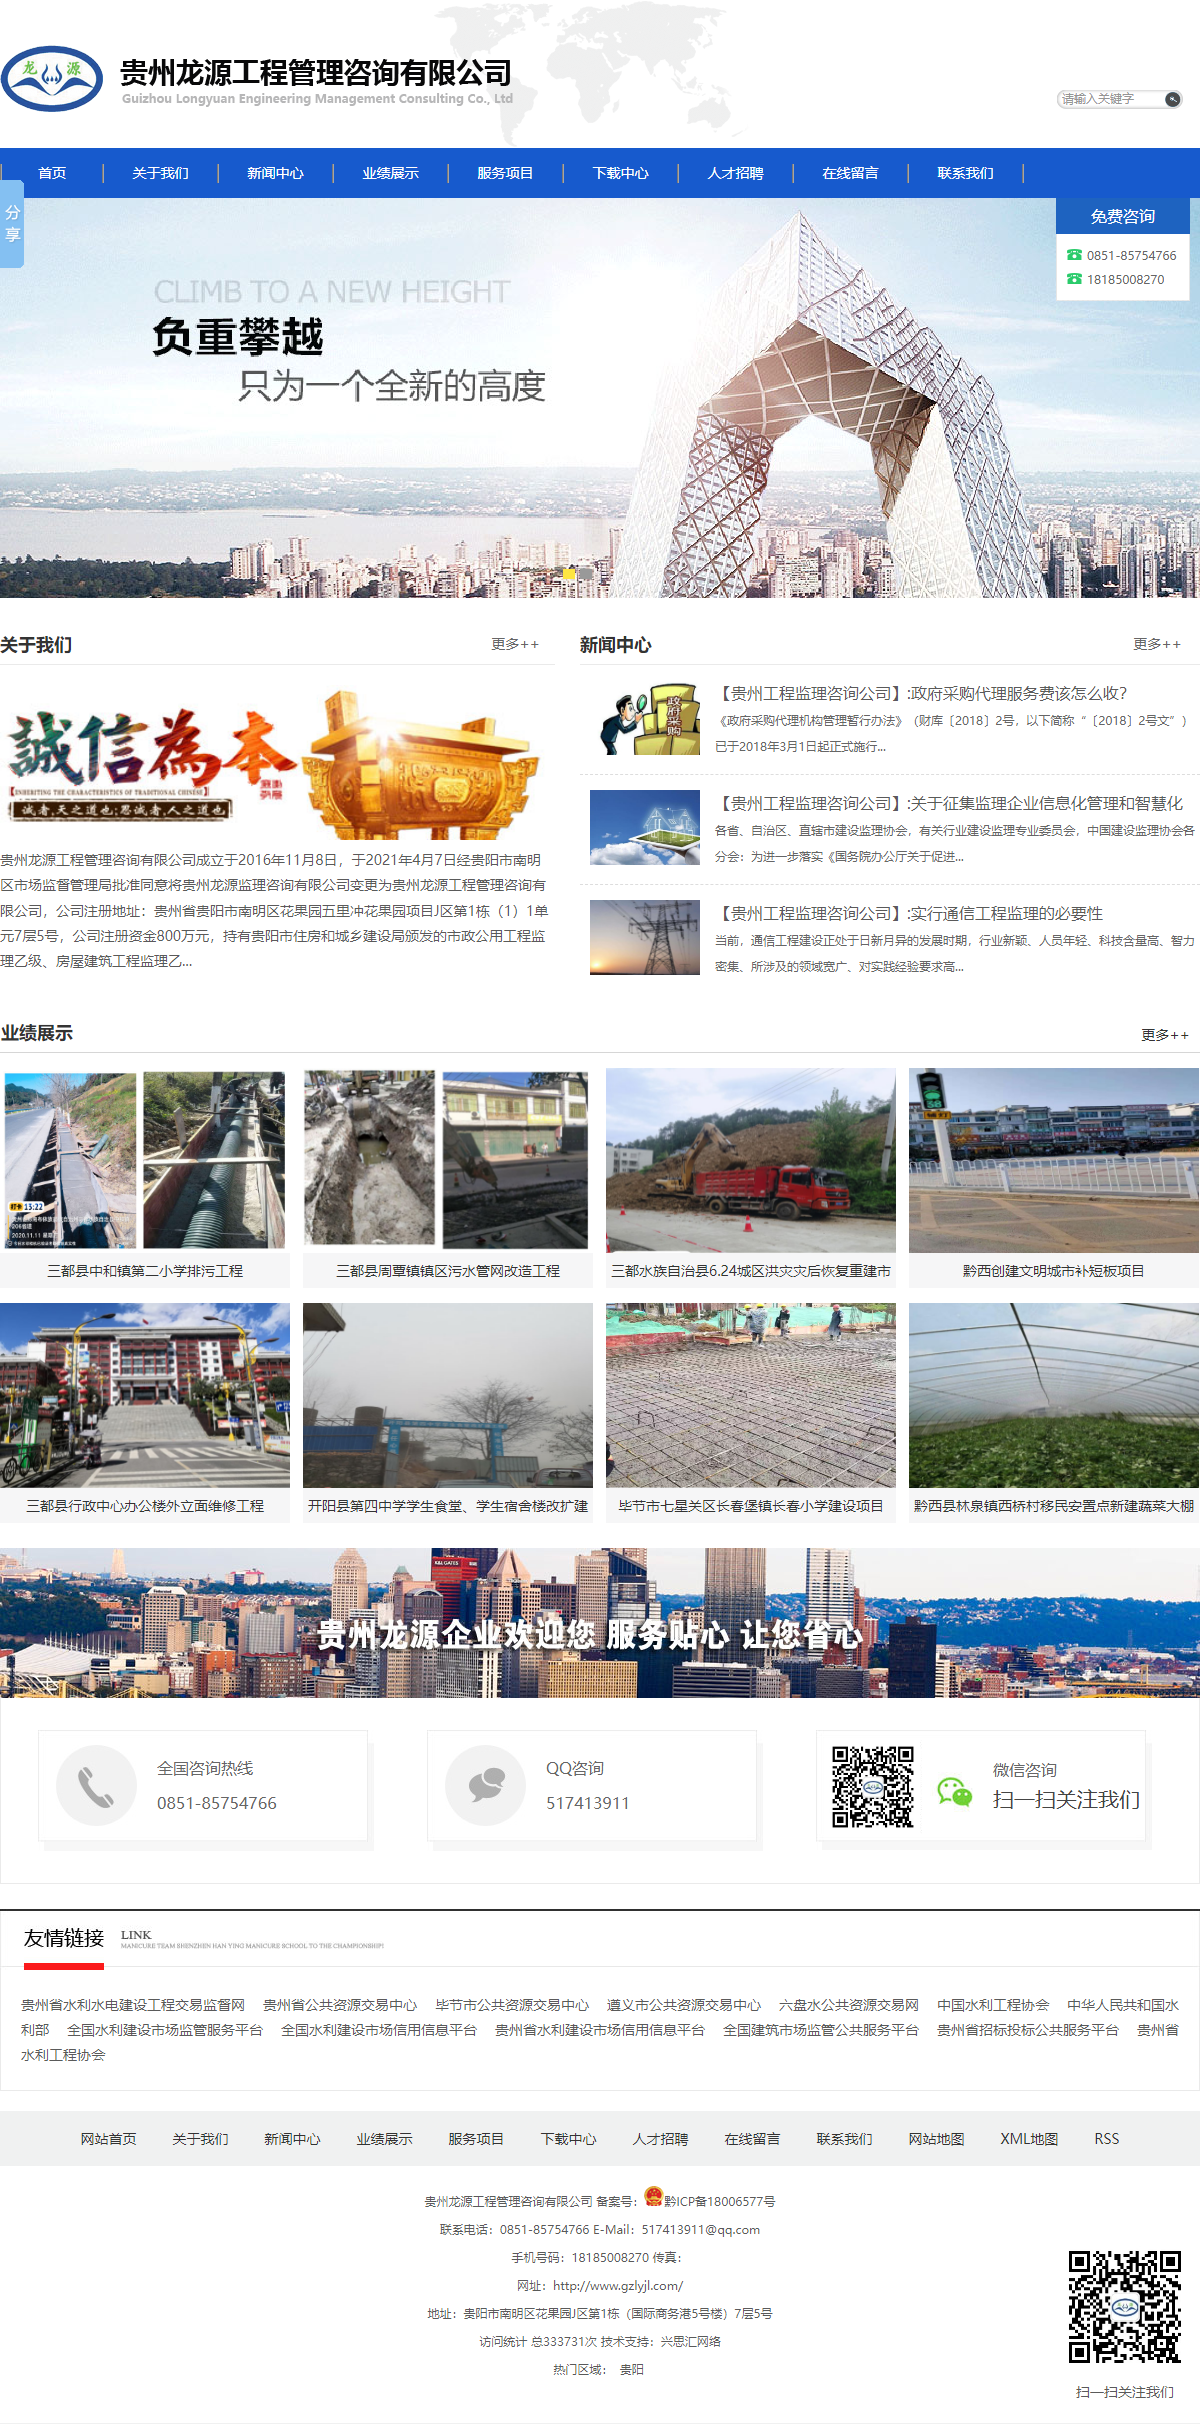 贵州龙源工程管理咨询有限公司网站案例